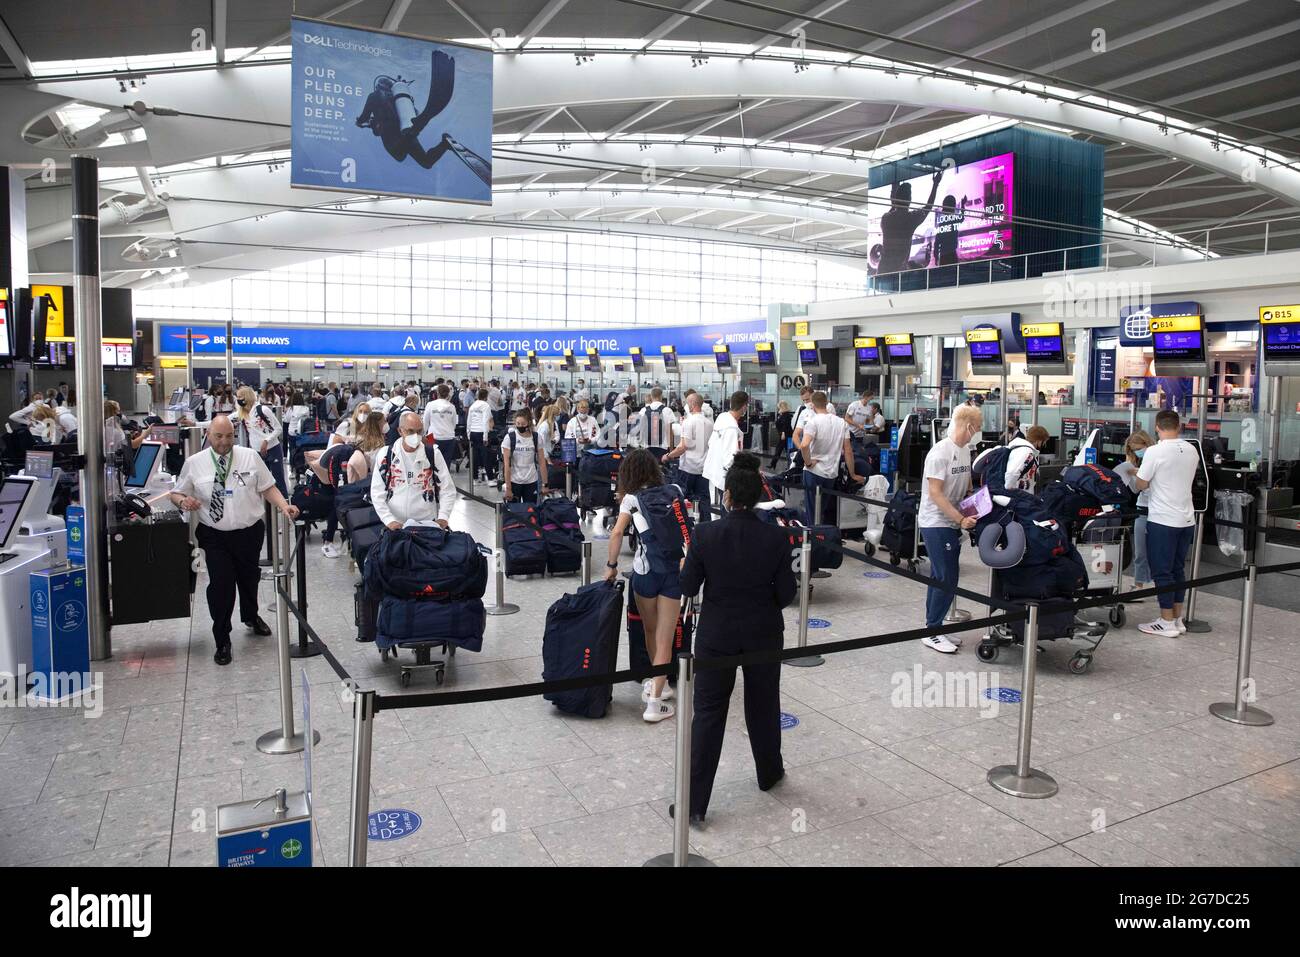 Londres, Royaume-Uni. 13 juillet 2021. Passagers du terminal 5. Les passagers de l'aéroport d'Heathrow seront proches le 19 juillet et les restrictions de voyage seront levées dans certains pays. Hier (12 juillet) il y a eu de longues files d'attente à Heathrow car beaucoup de gardes de sécurité ont dû s'isoler. Le Syndicat des services d'immigration a averti que les voyageurs peuvent être confrontés à des retards de 6 heures lorsque les restrictions sont assouplies. Crédit : Mark Thomas/Alay Live News Banque D'Images